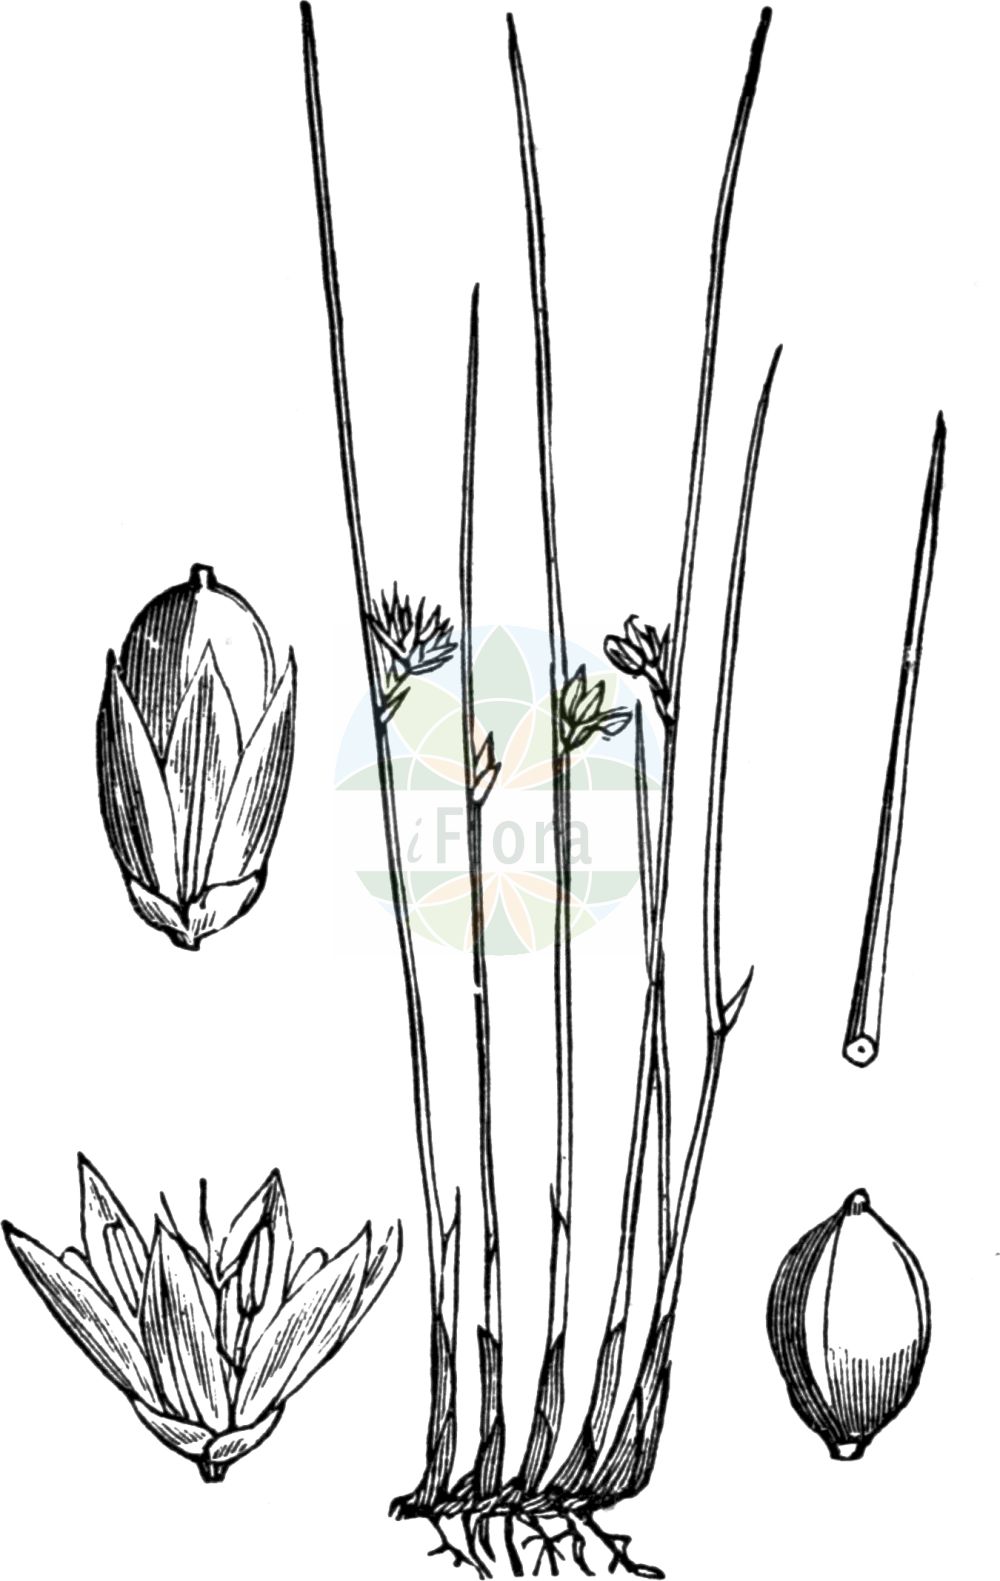 Historische Abbildung von Juncus filiformis (Faden-Binse - Thread Rush). Das Bild zeigt Blatt, Bluete, Frucht und Same. ---- Historical Drawing of Juncus filiformis (Faden-Binse - Thread Rush). The image is showing leaf, flower, fruit and seed.(Juncus filiformis,Faden-Binse,Thread Rush,Juncus filiformis,Juncus transsilvanicus,Faden-Binse,Faden-Simse,Thread Rush,Juncus,Binse,Rush,Juncaceae,Binsengewächse,Rush family,Blatt,Bluete,Frucht,Same,leaf,flower,fruit,seed,Fitch et al. (1880))